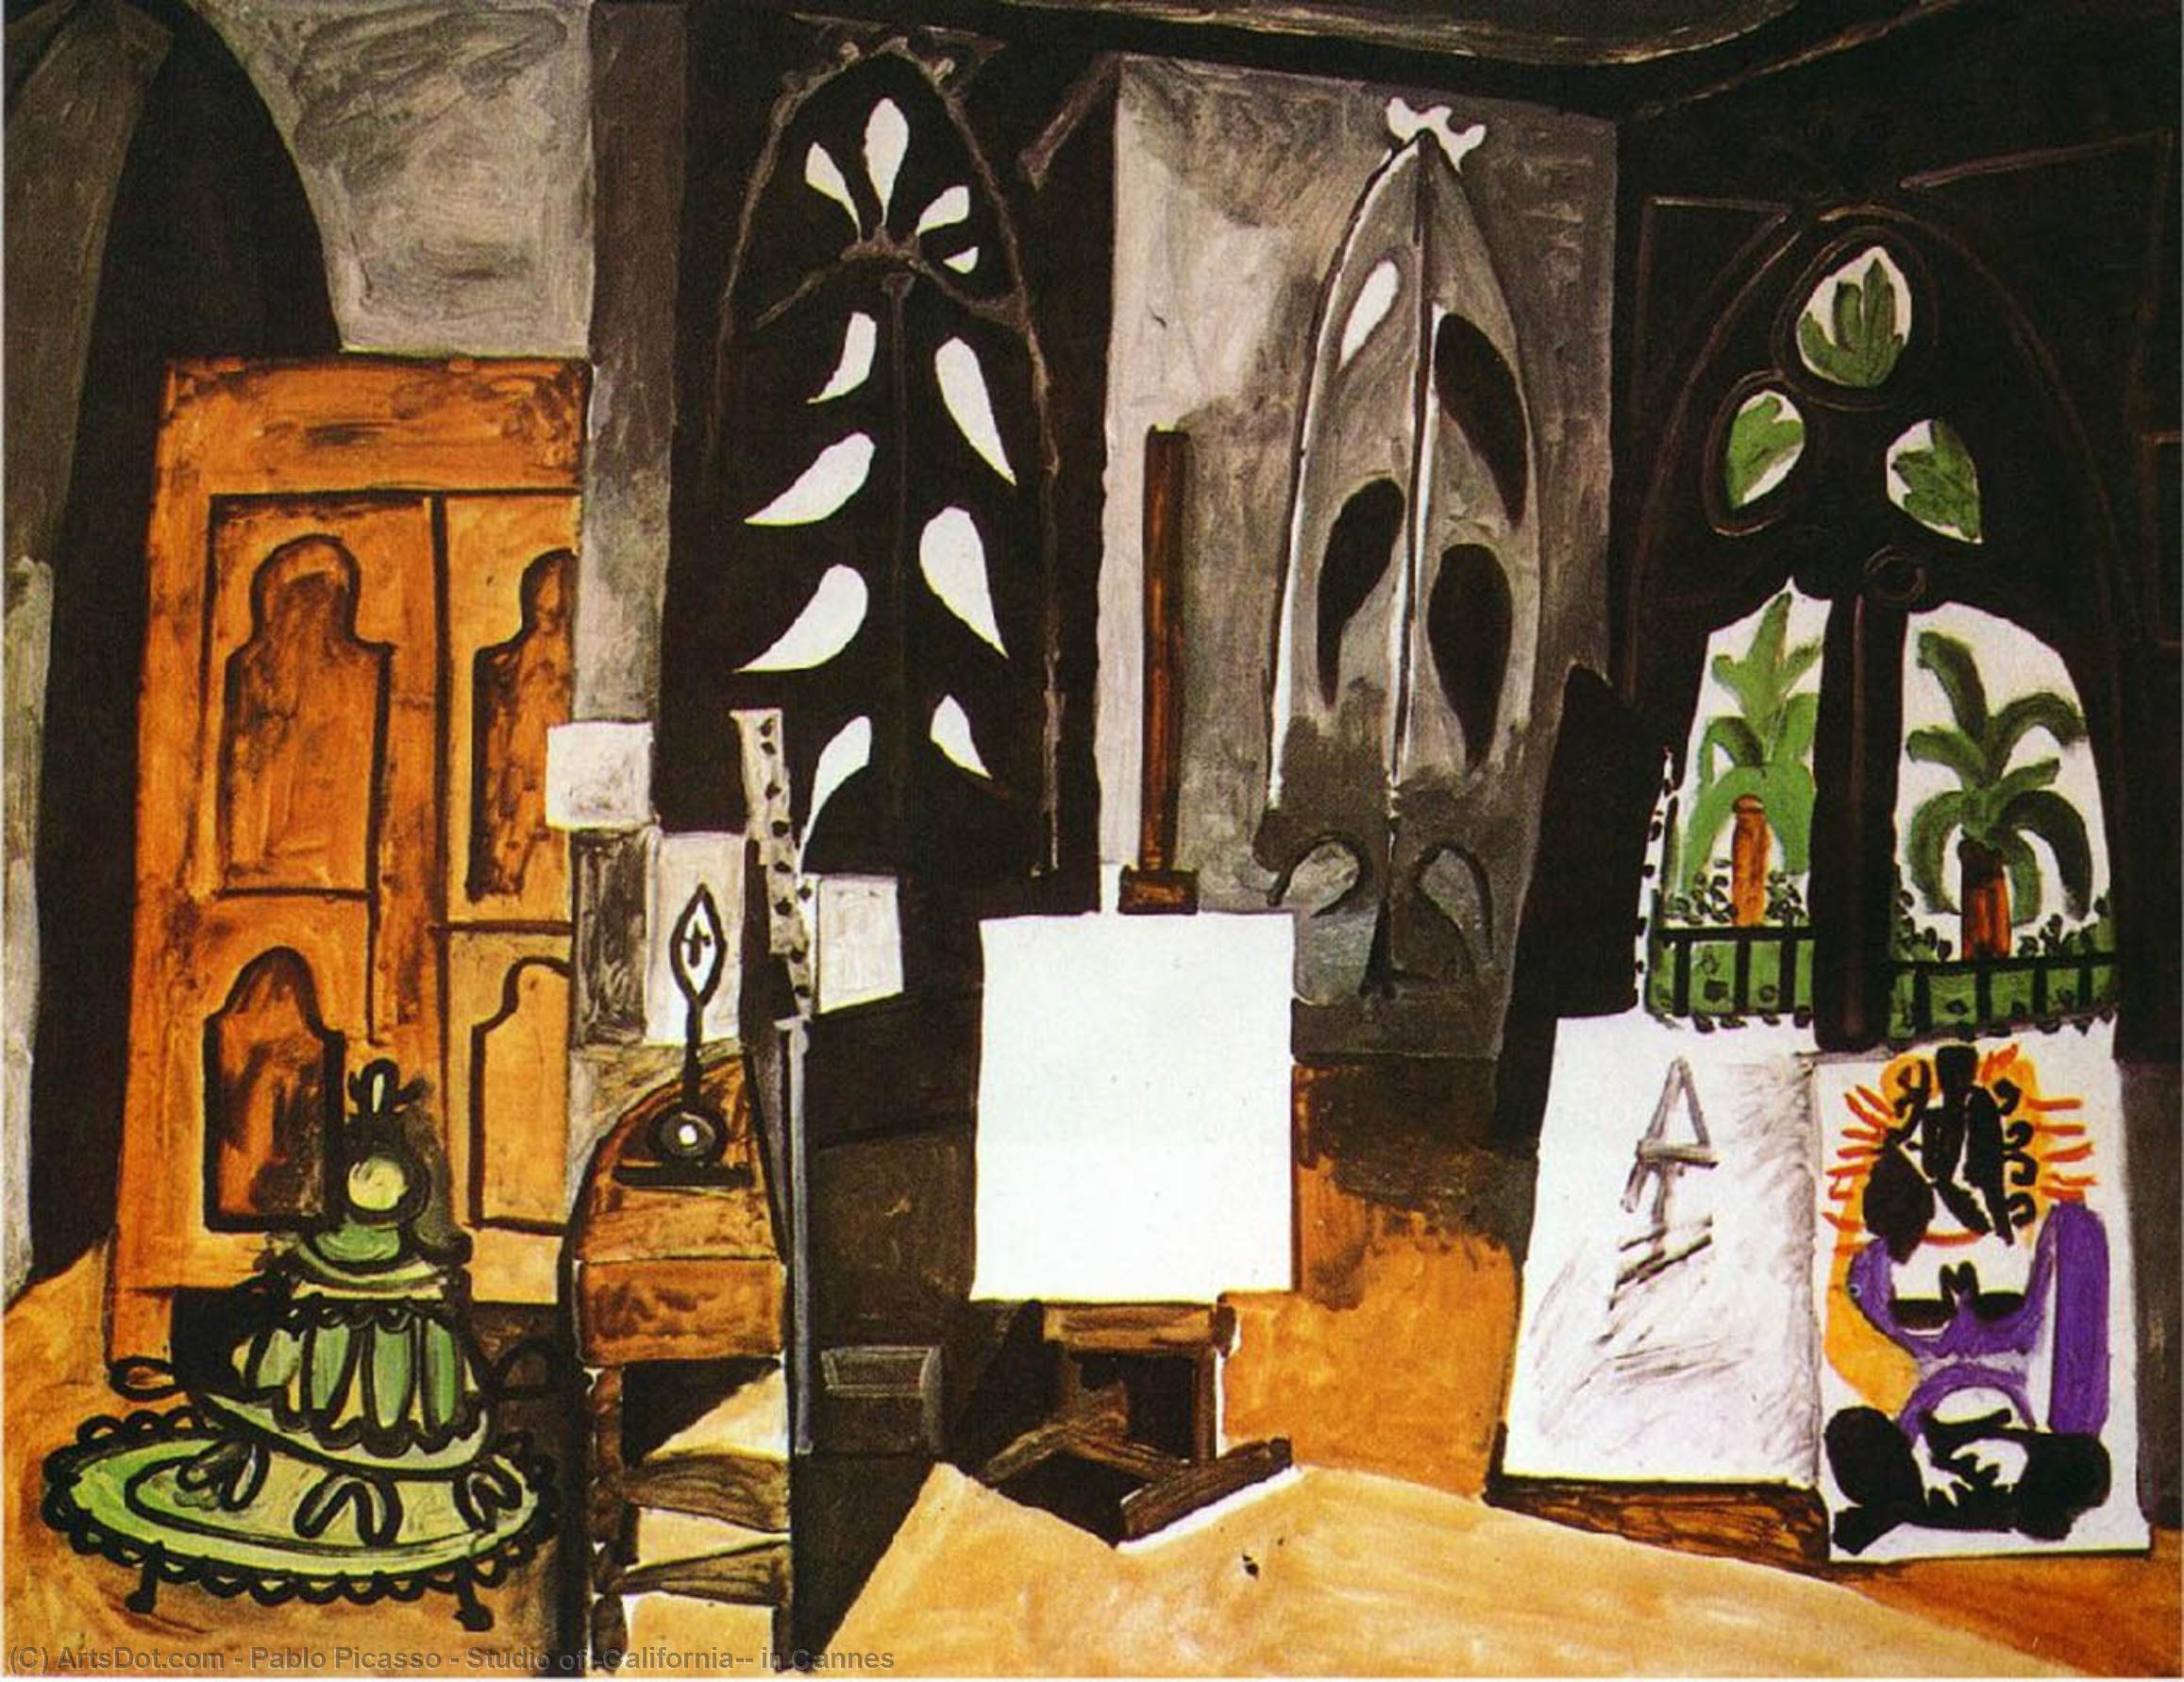 WikiOO.org - Encyclopedia of Fine Arts - Malba, Artwork Pablo Picasso - Studio of 'California'' in Cannes